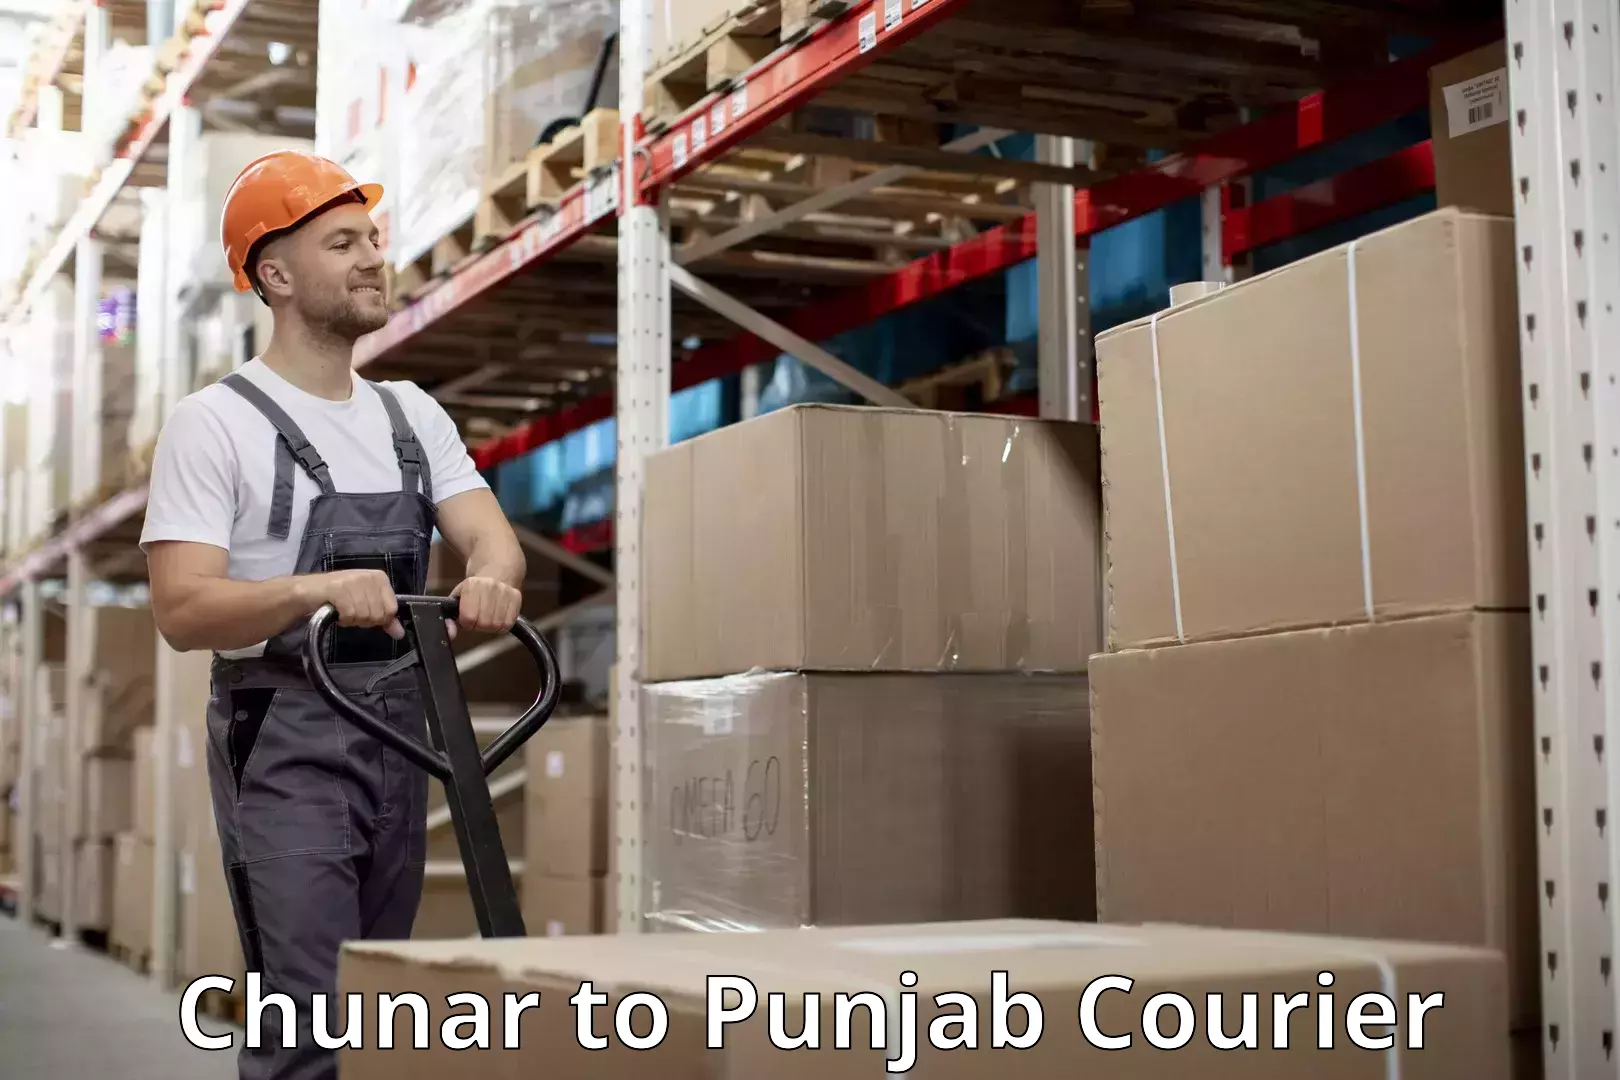 Baggage transport scheduler Chunar to Punjab